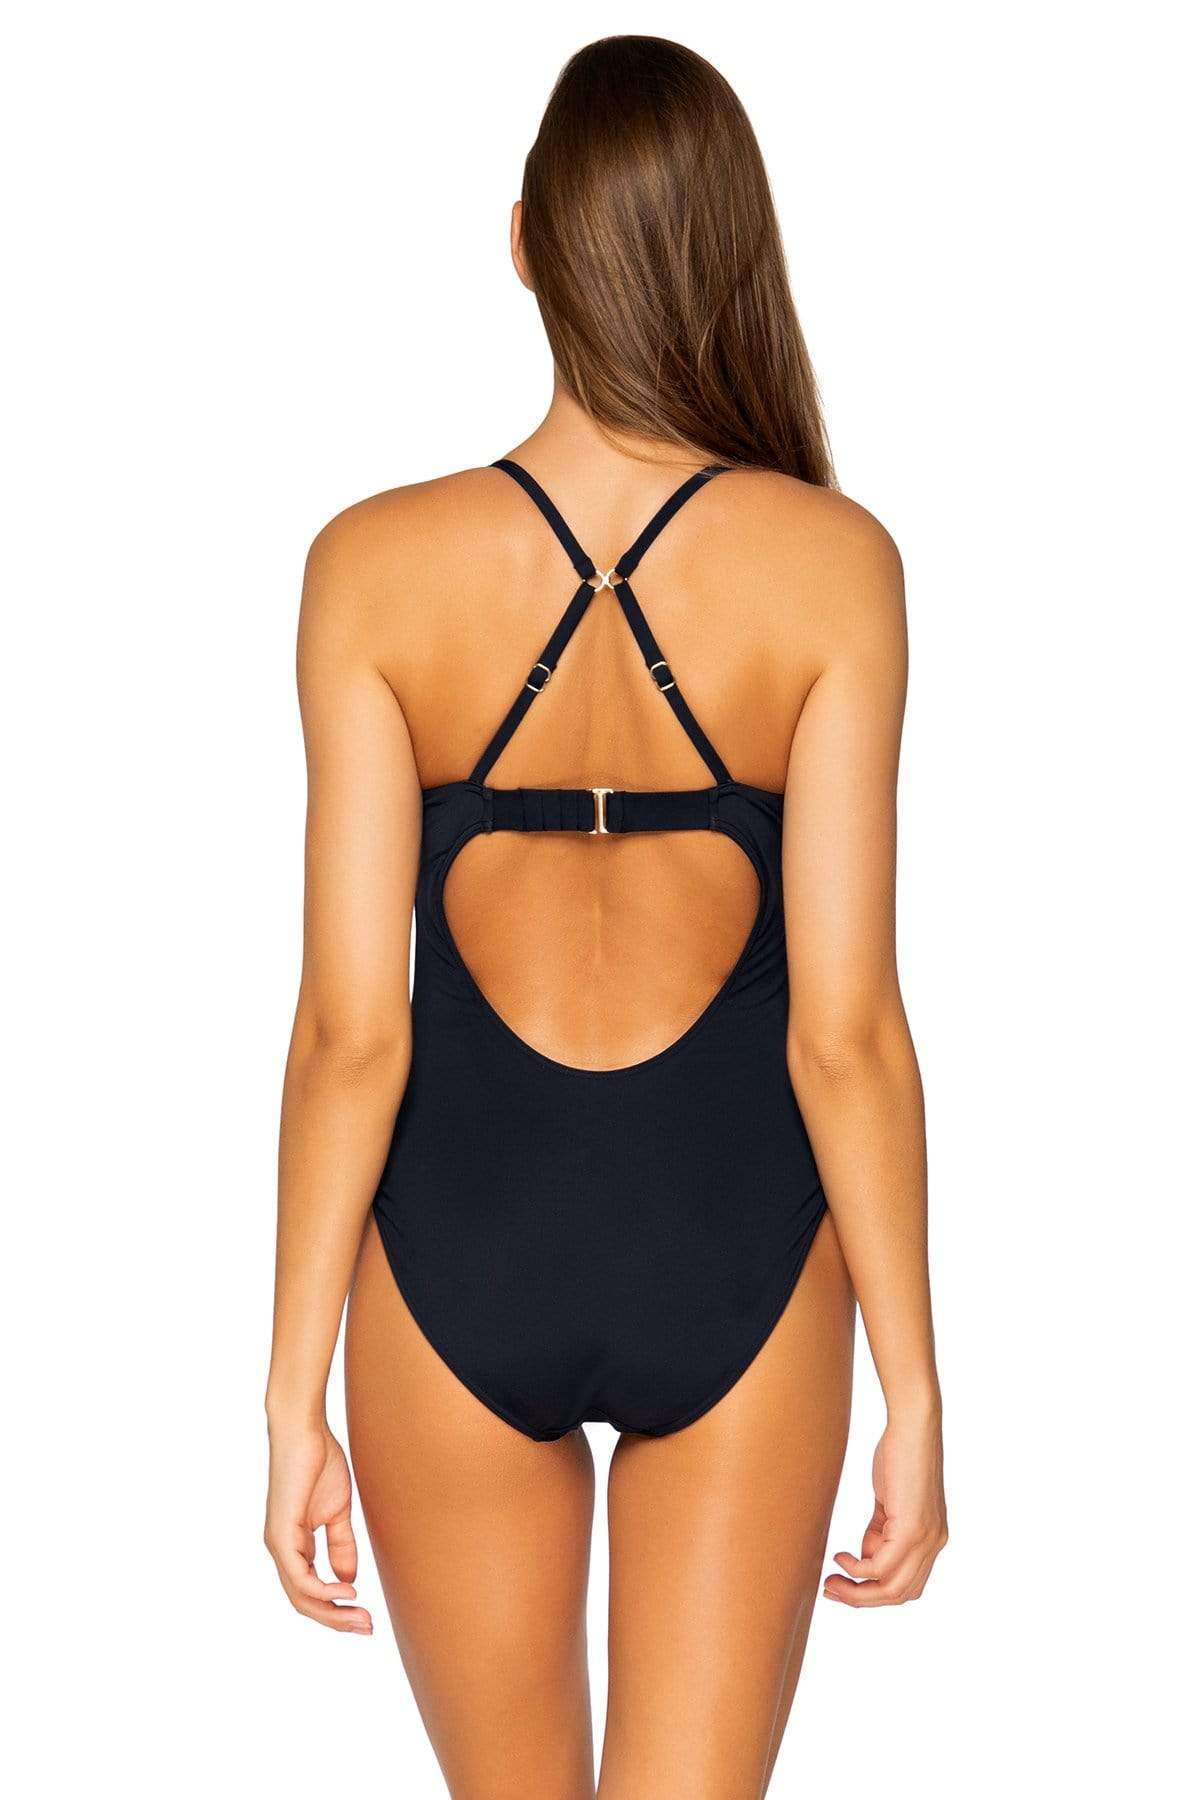 Bestswimwear -  Sunsets Black Tidepool One piece